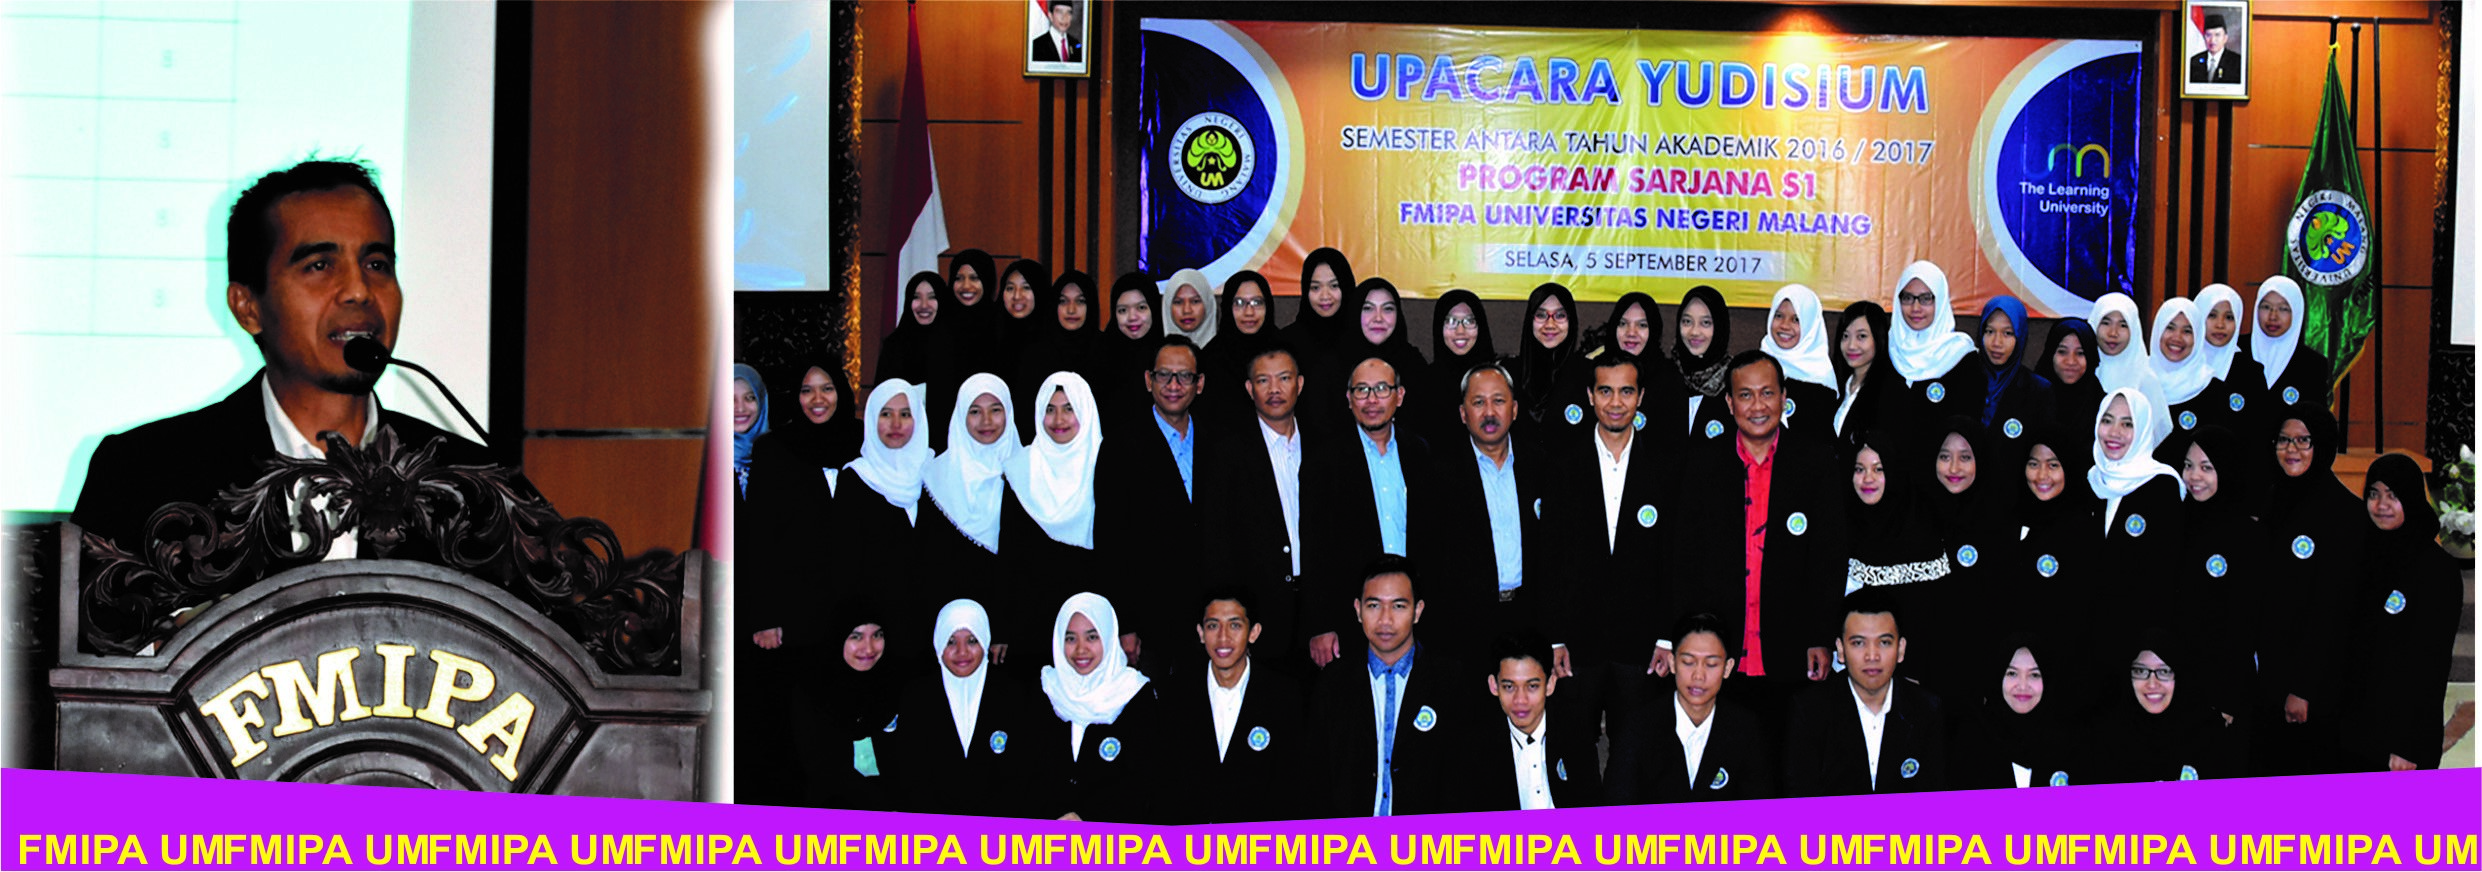 Upacara Yudisium Semester Antara 2016/2017 FMIPA Universitas Negeri Malang